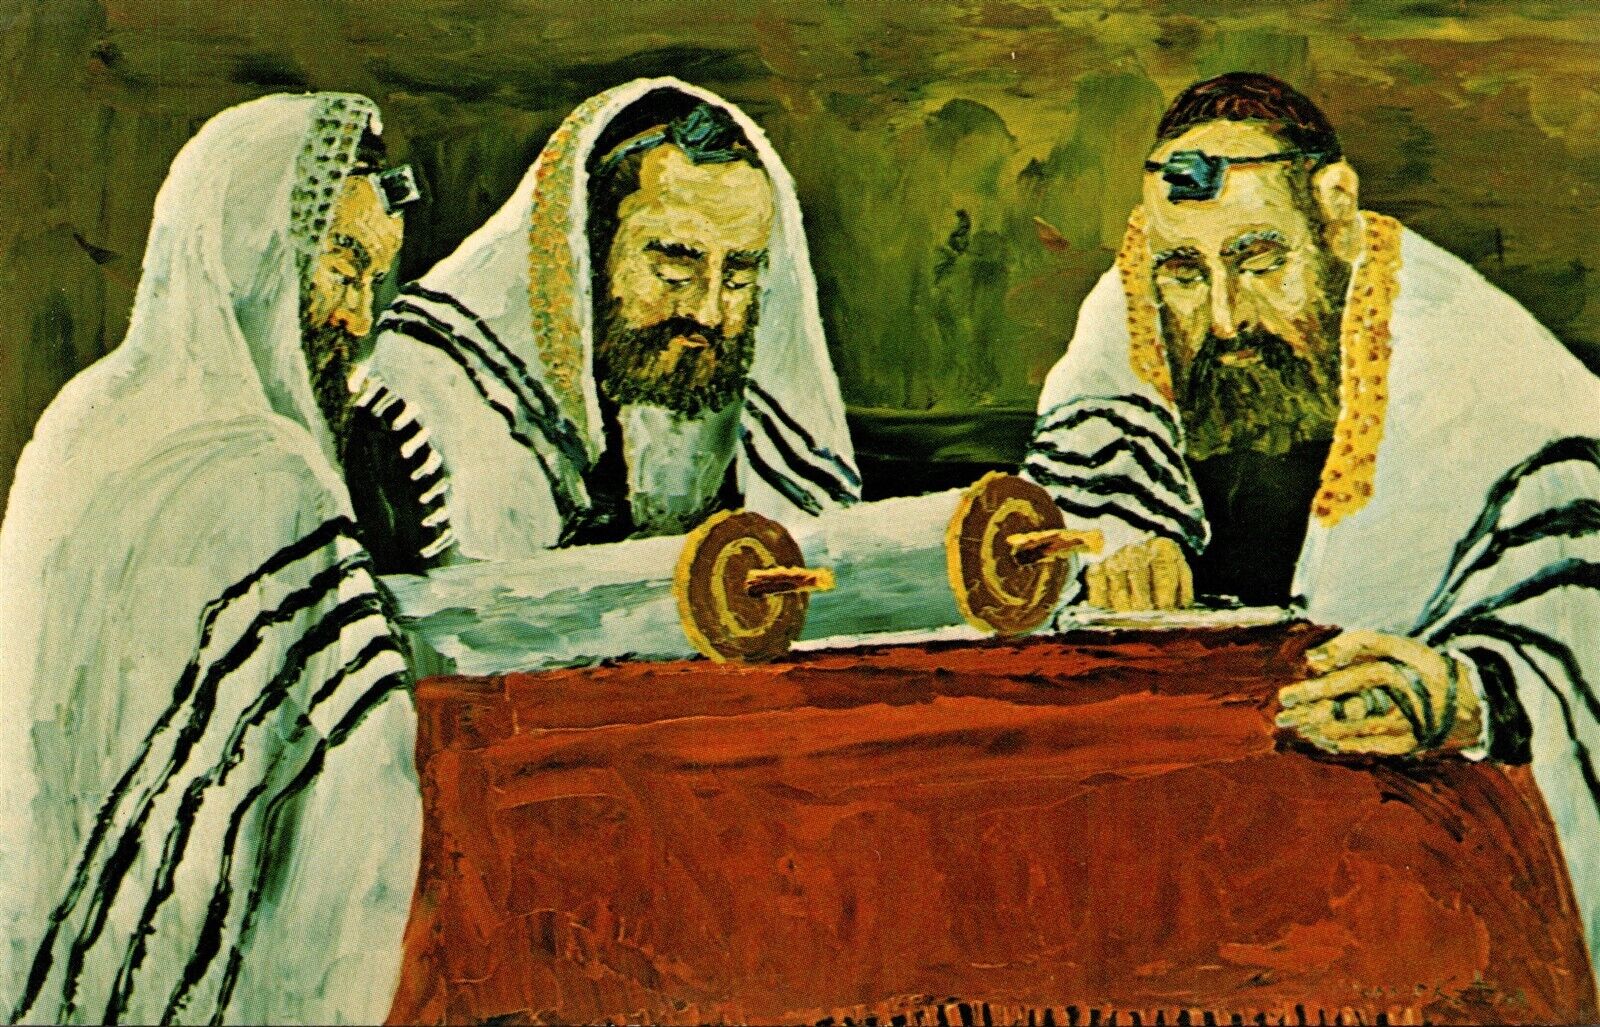 The Sedra Rabbis Scrolls Morris Katz Jewish Judaica Artist Signed Art Postcard A